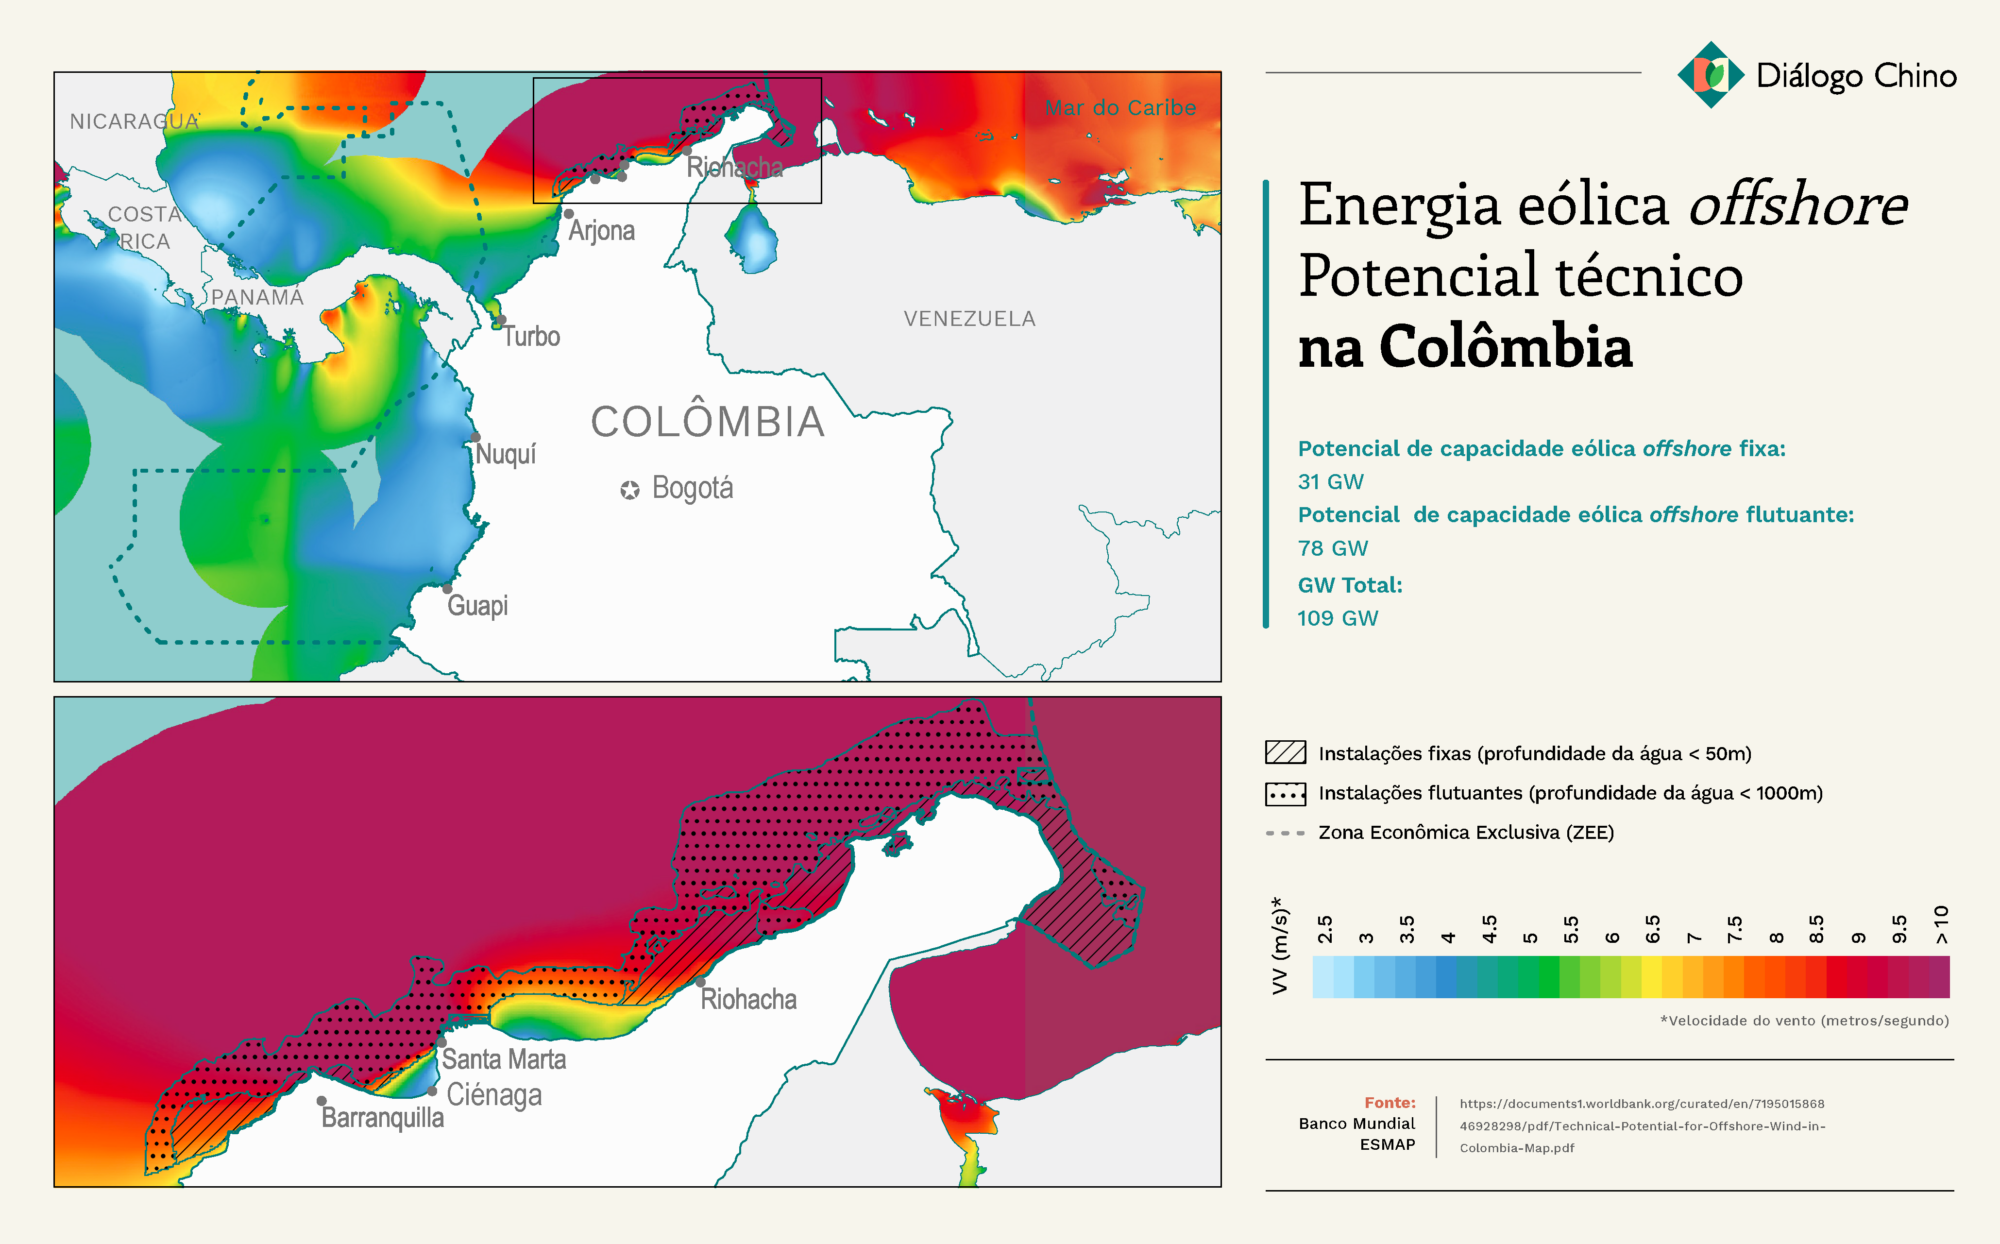 Mapa mostrando o potencial eólico offshore da Colômbia